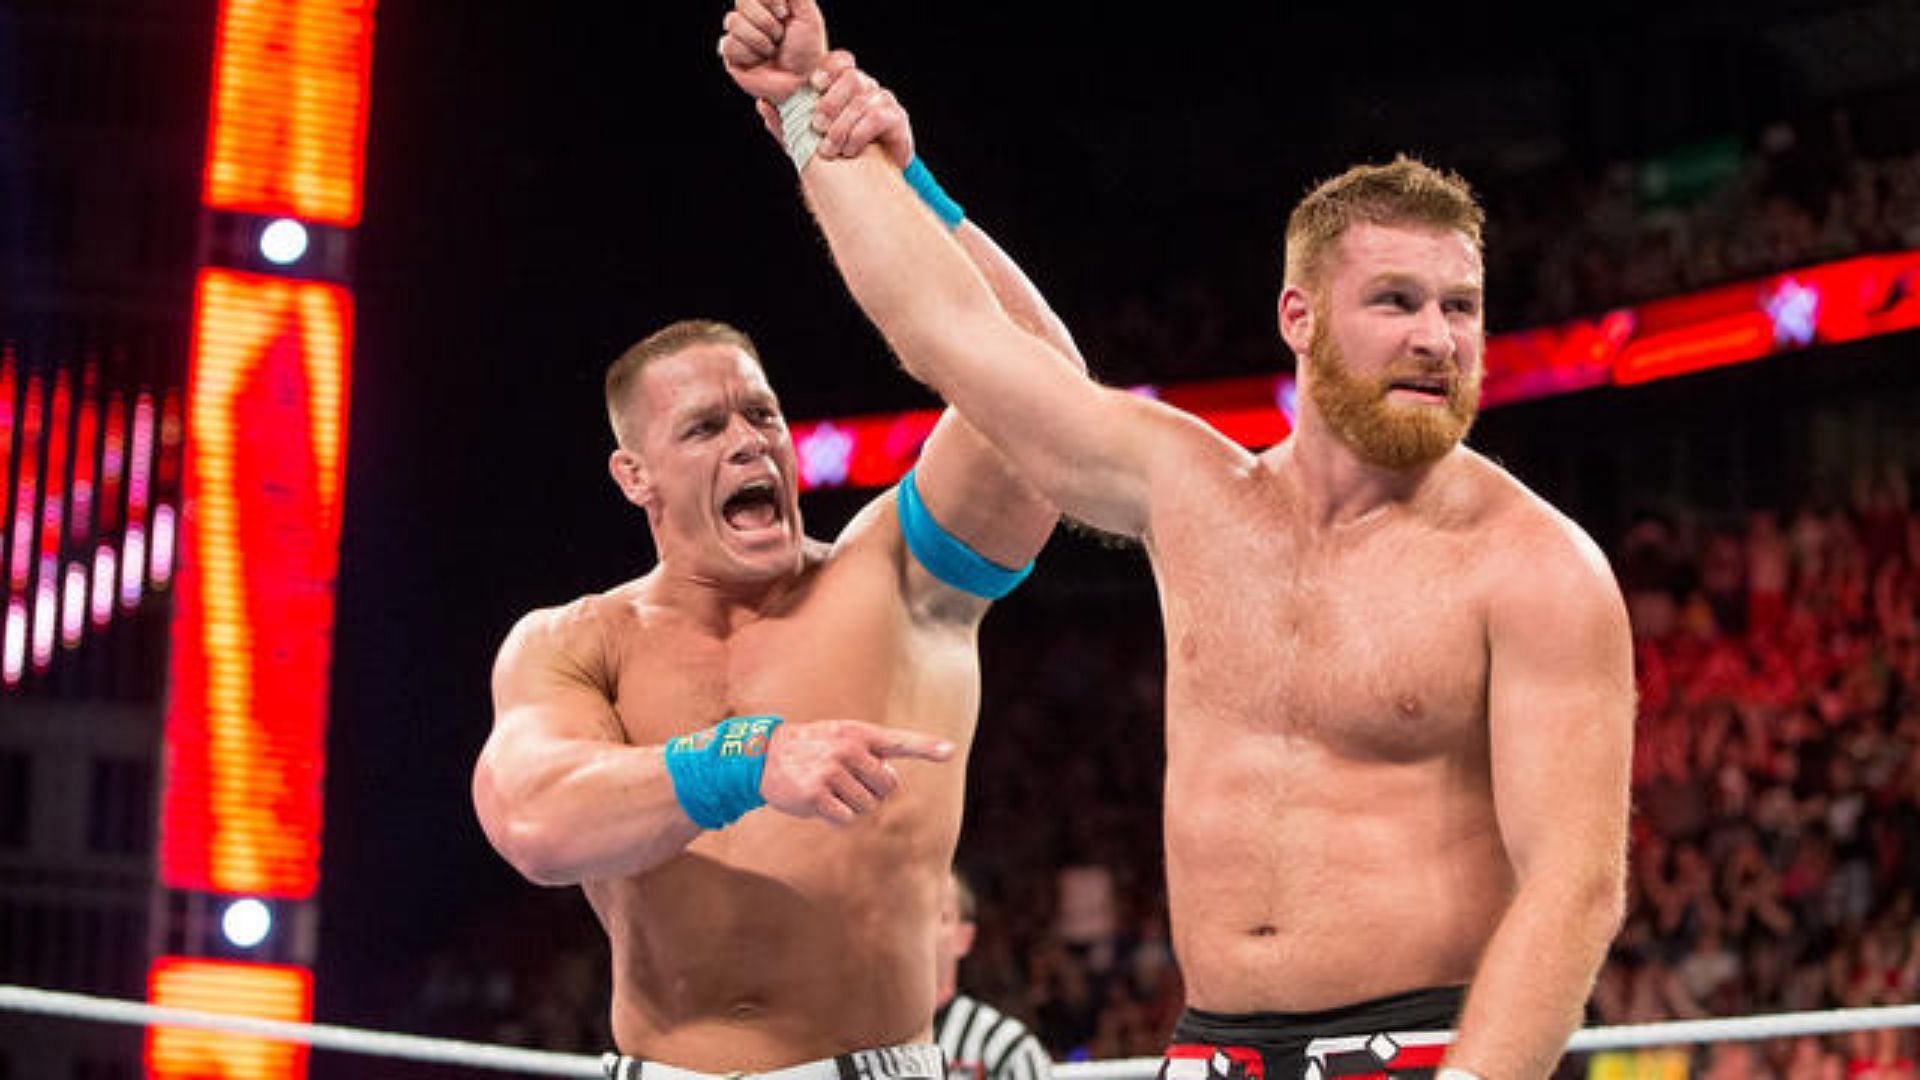 John Cena and Sami Zayn faced off in 2015